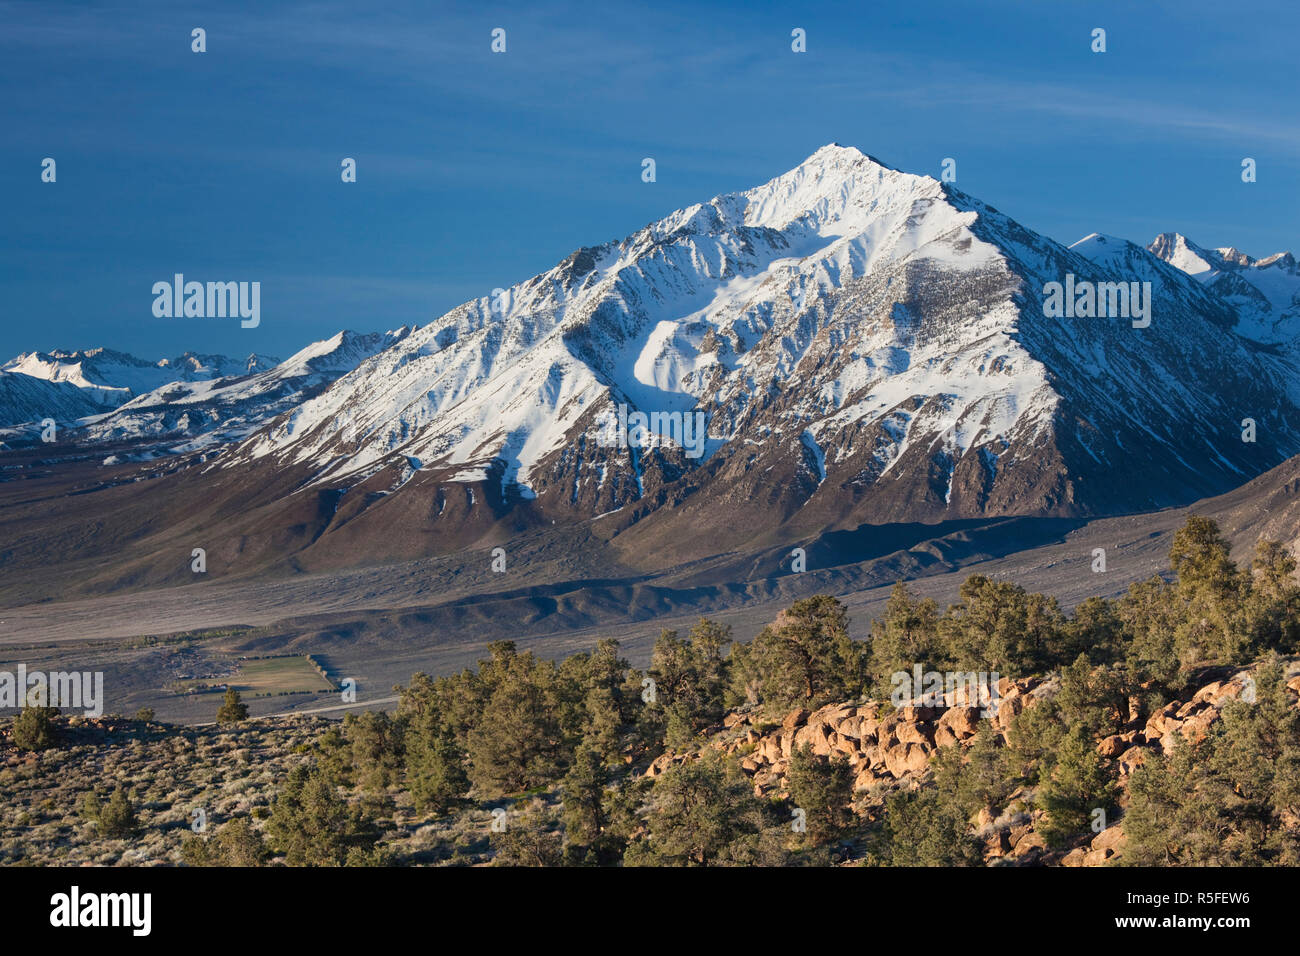 États-unis, Californie, l'Est de la Sierra Nevada, Alta Vista, la Sierra Nevada, vue sur Mt. Tom, d'une altitude de 13 652 pieds Banque D'Images